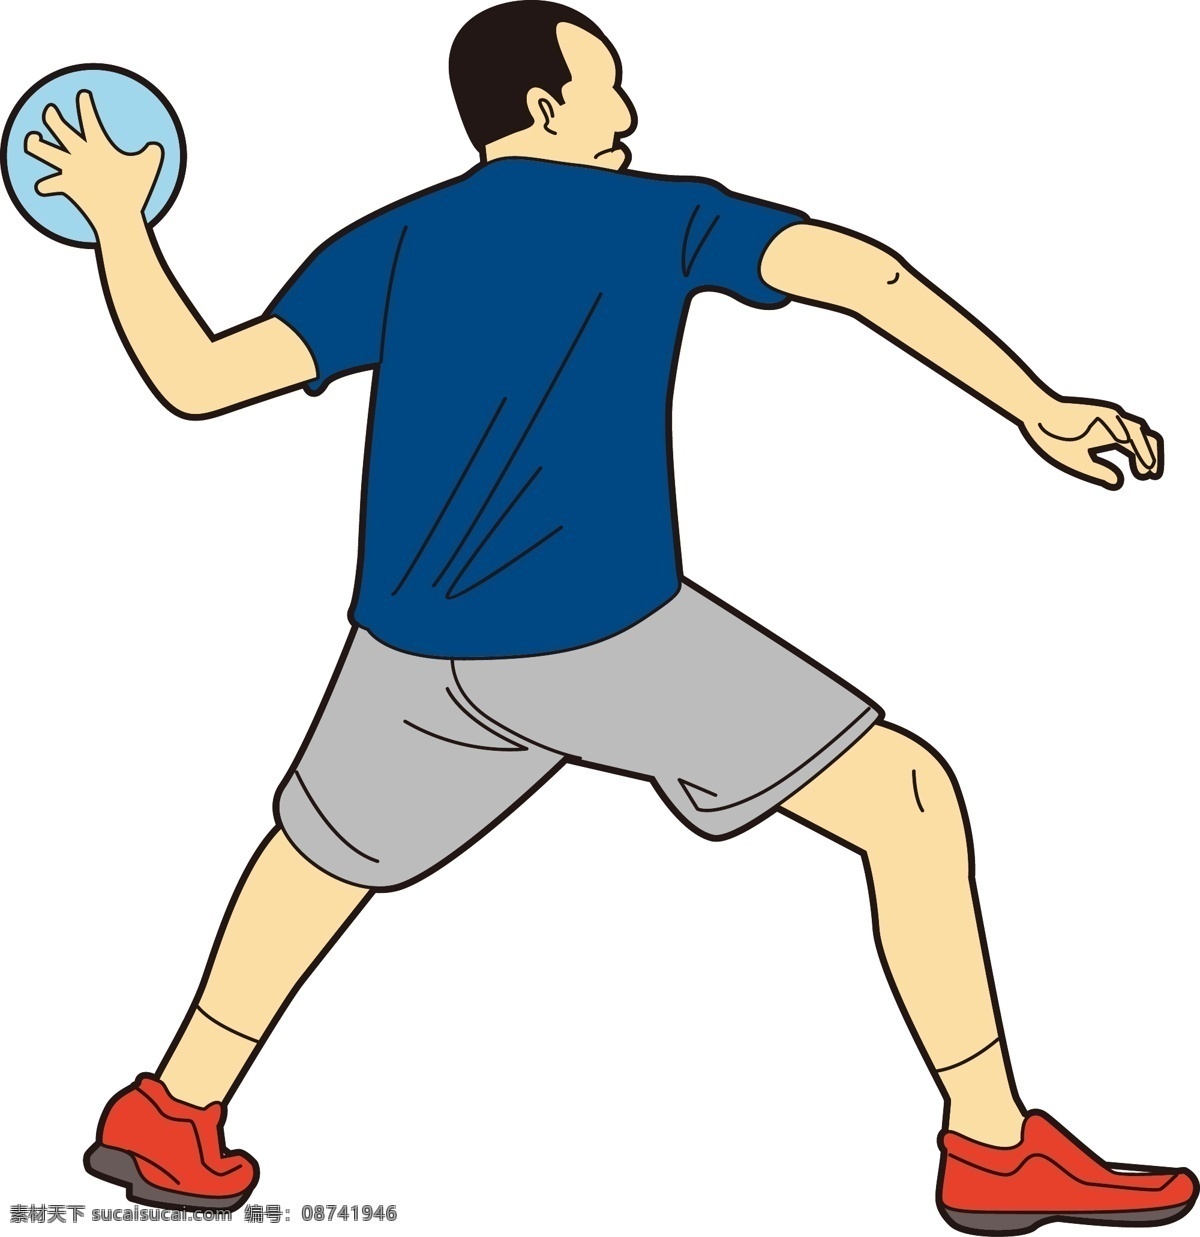 卡通 打球 姿势 矢量 蓝球 蓝色球衣 运动员 体育运动员 体育 排球 篮球 球员 男子 男人